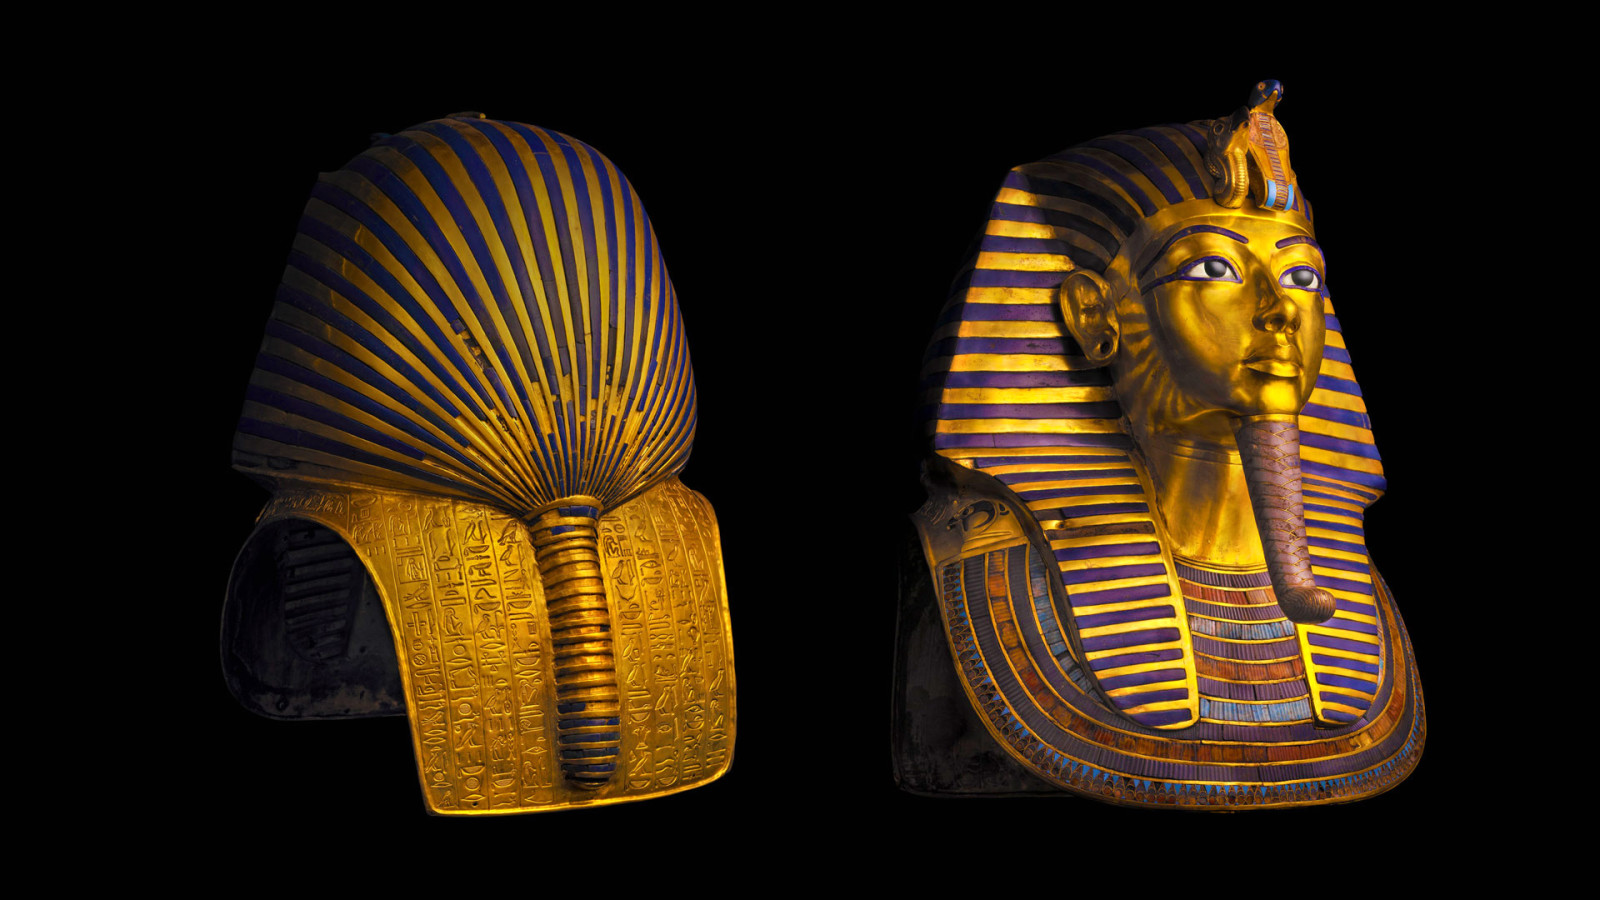 埃及, 法老王, 开罗博物馆, 图坦卡蒙面具